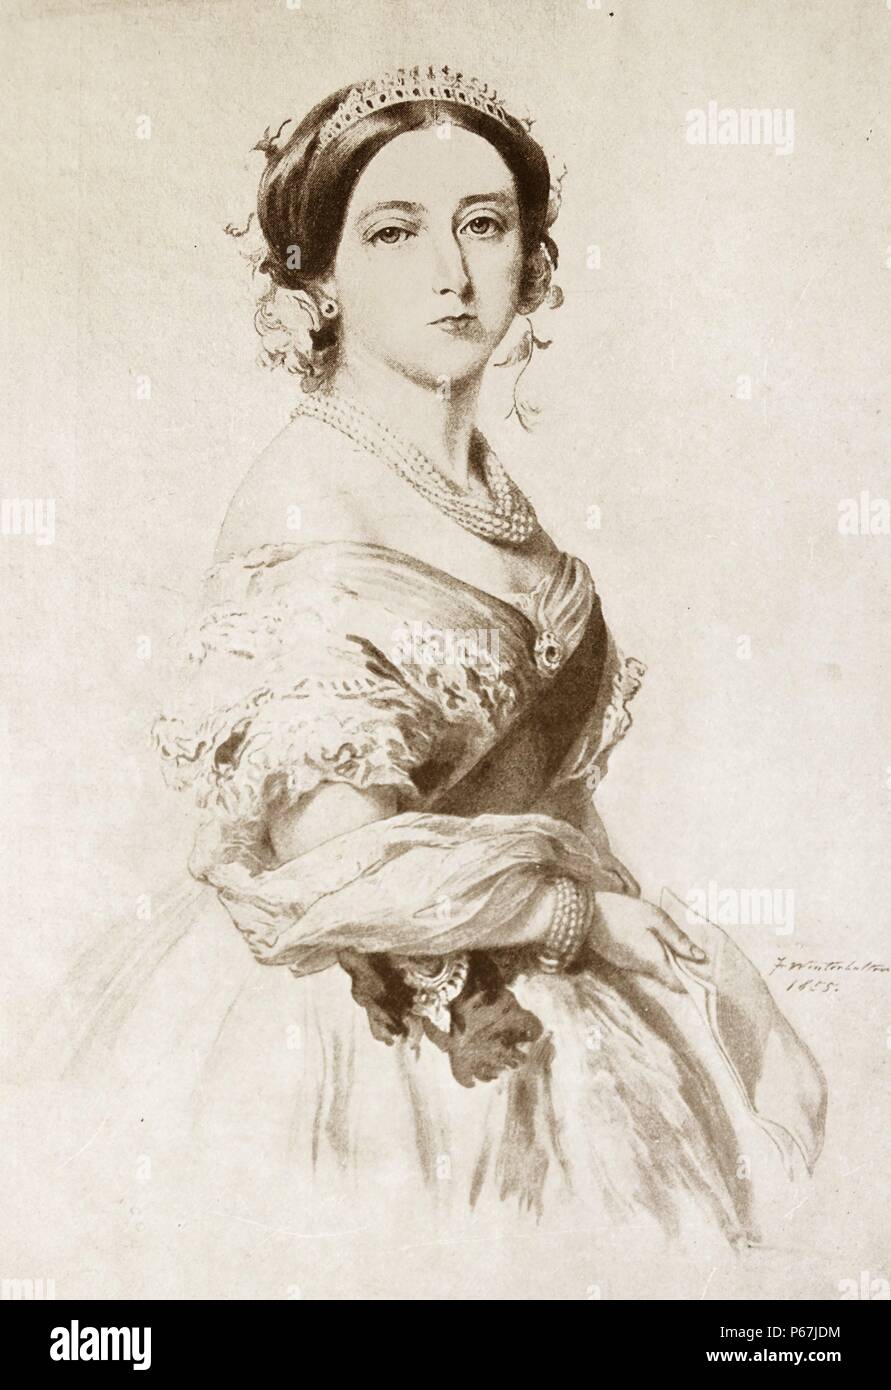 Königin Victoria von Großbritannien im Jahre 1855. Victoria (Alexandrina Victoria; 24. Mai 1819 - 22. Januar 1901) Der Monarch des Vereinigten Königreichs von Großbritannien und Irland wurde ab dem 20. Juni 1837 bis zu ihrem Tod. Vom 1. Mai 1876, die sie pflegte, die zusätzlichen Titel der Kaiserin von Indien Stockfoto